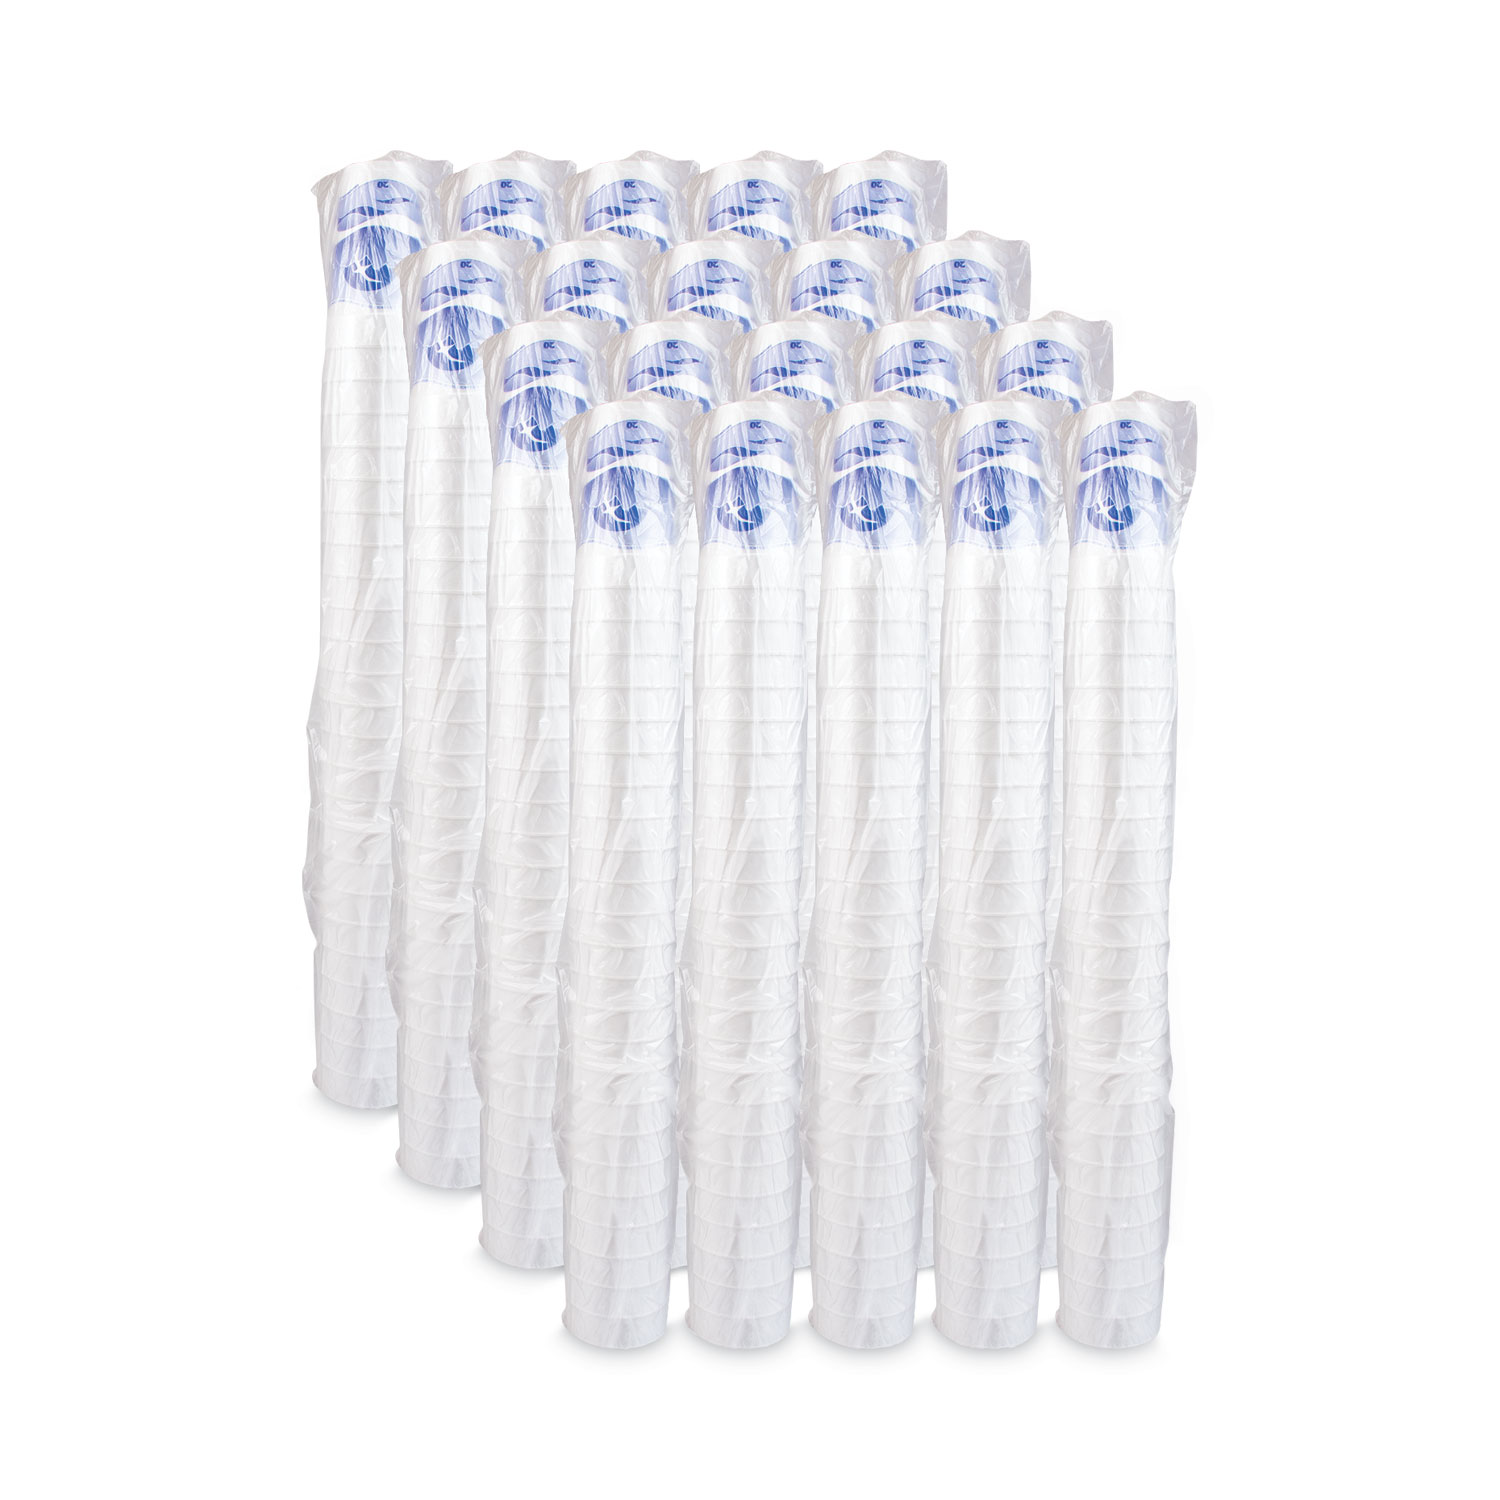 Foam Drink Cups, 12 oz, White, 25/Pack - mastersupplyonline